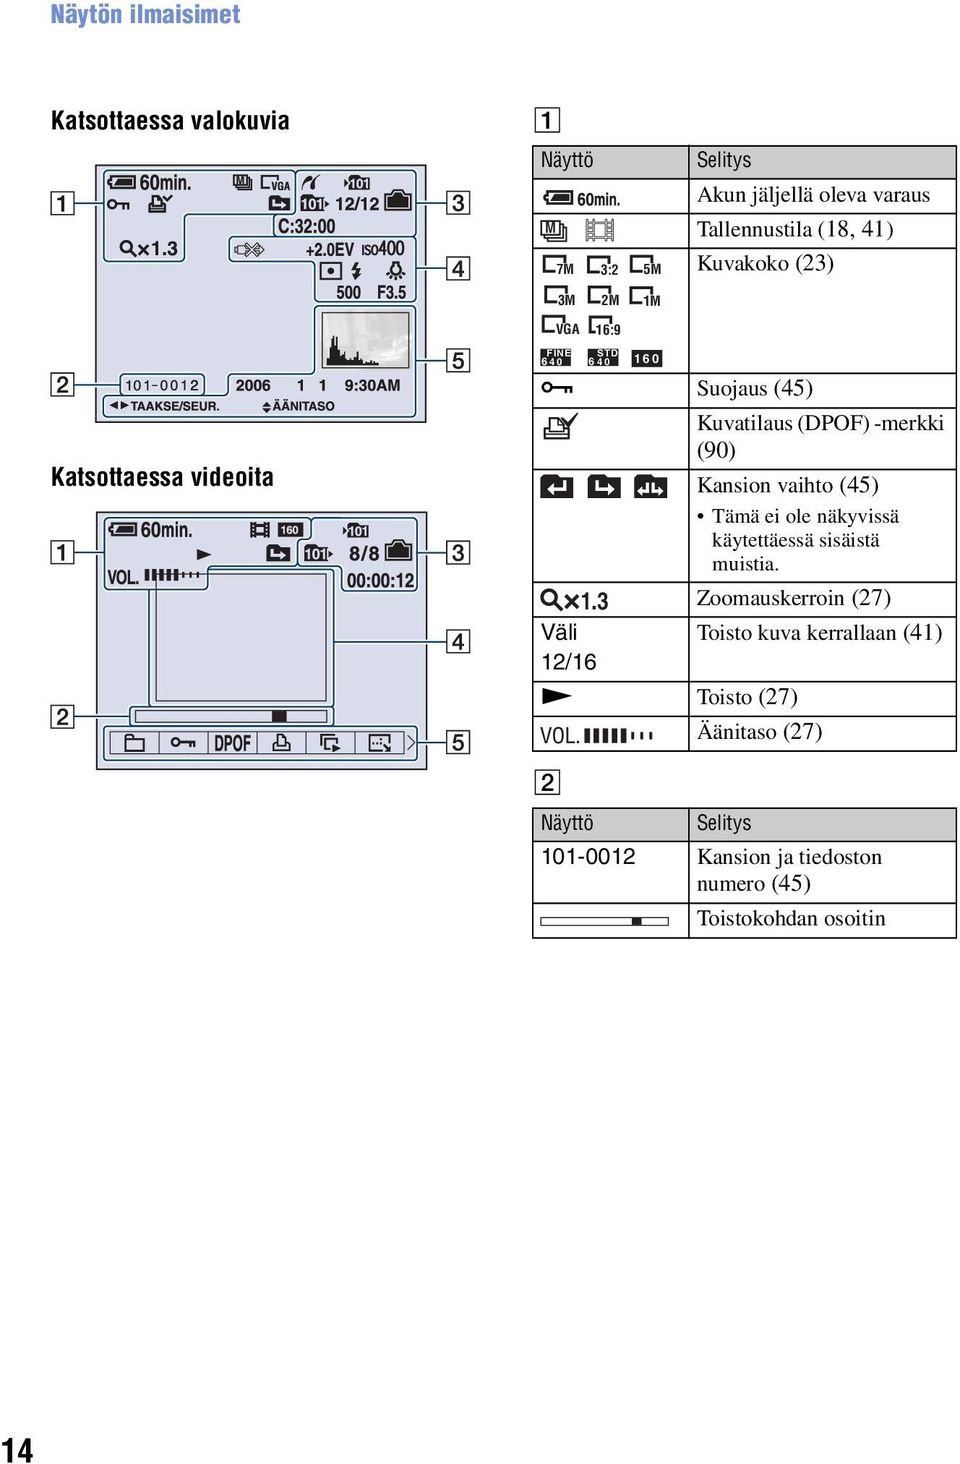 3 Väli 12/16 1M VGA 16:9 FINE STD 6 40 6 40 160 N Toisto (27) Kuvatilaus (DPOF) -merkki (90) Kansion vaihto (45) Tämä ei